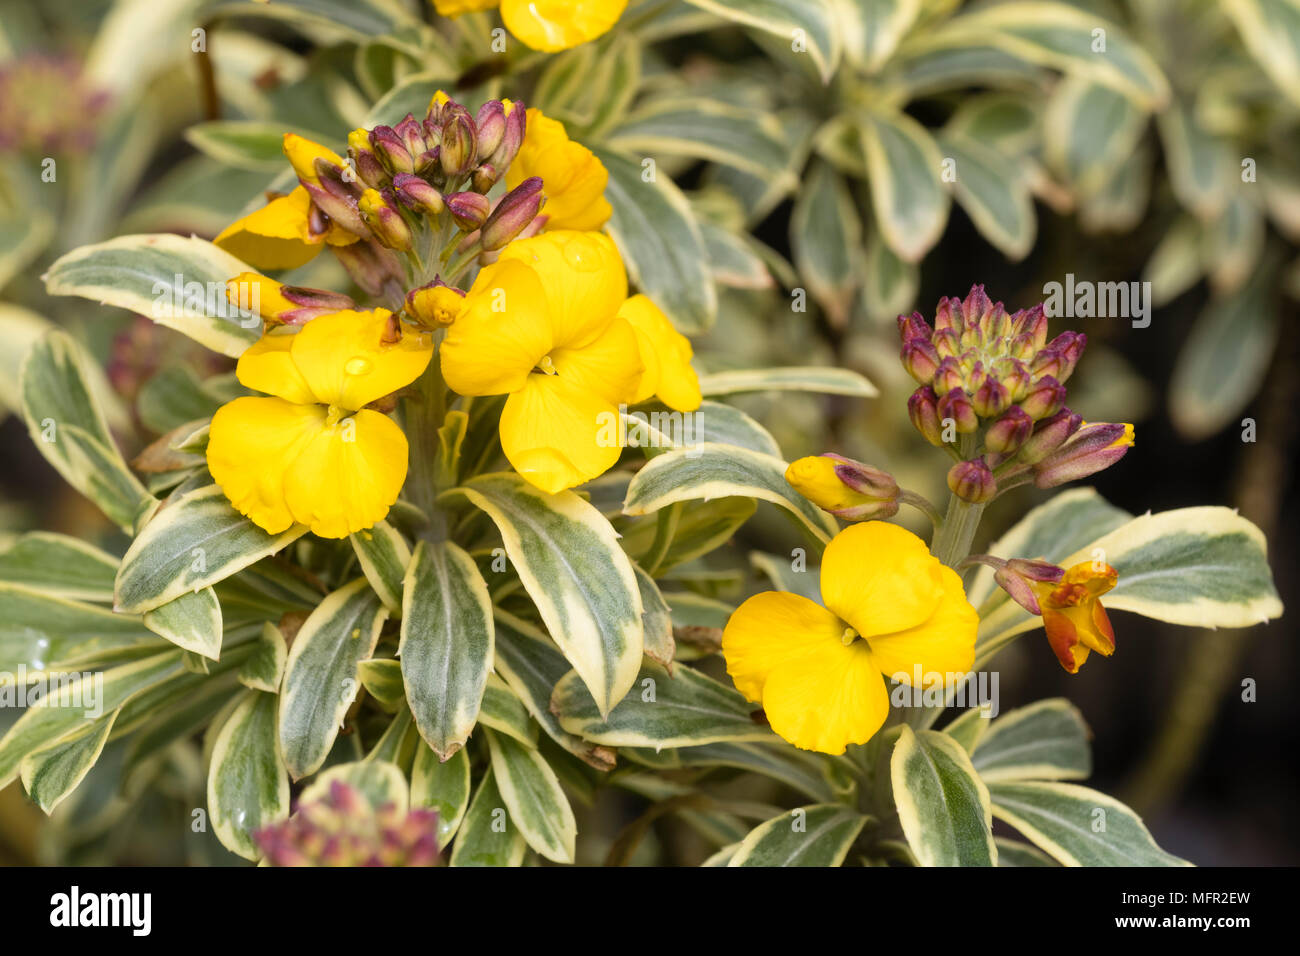 Perfumadas flores amarillas celebrado en picos por encima de moteado de hojas perennes de la perenne alhelí, Erysimum 'Sunburst' Foto de stock